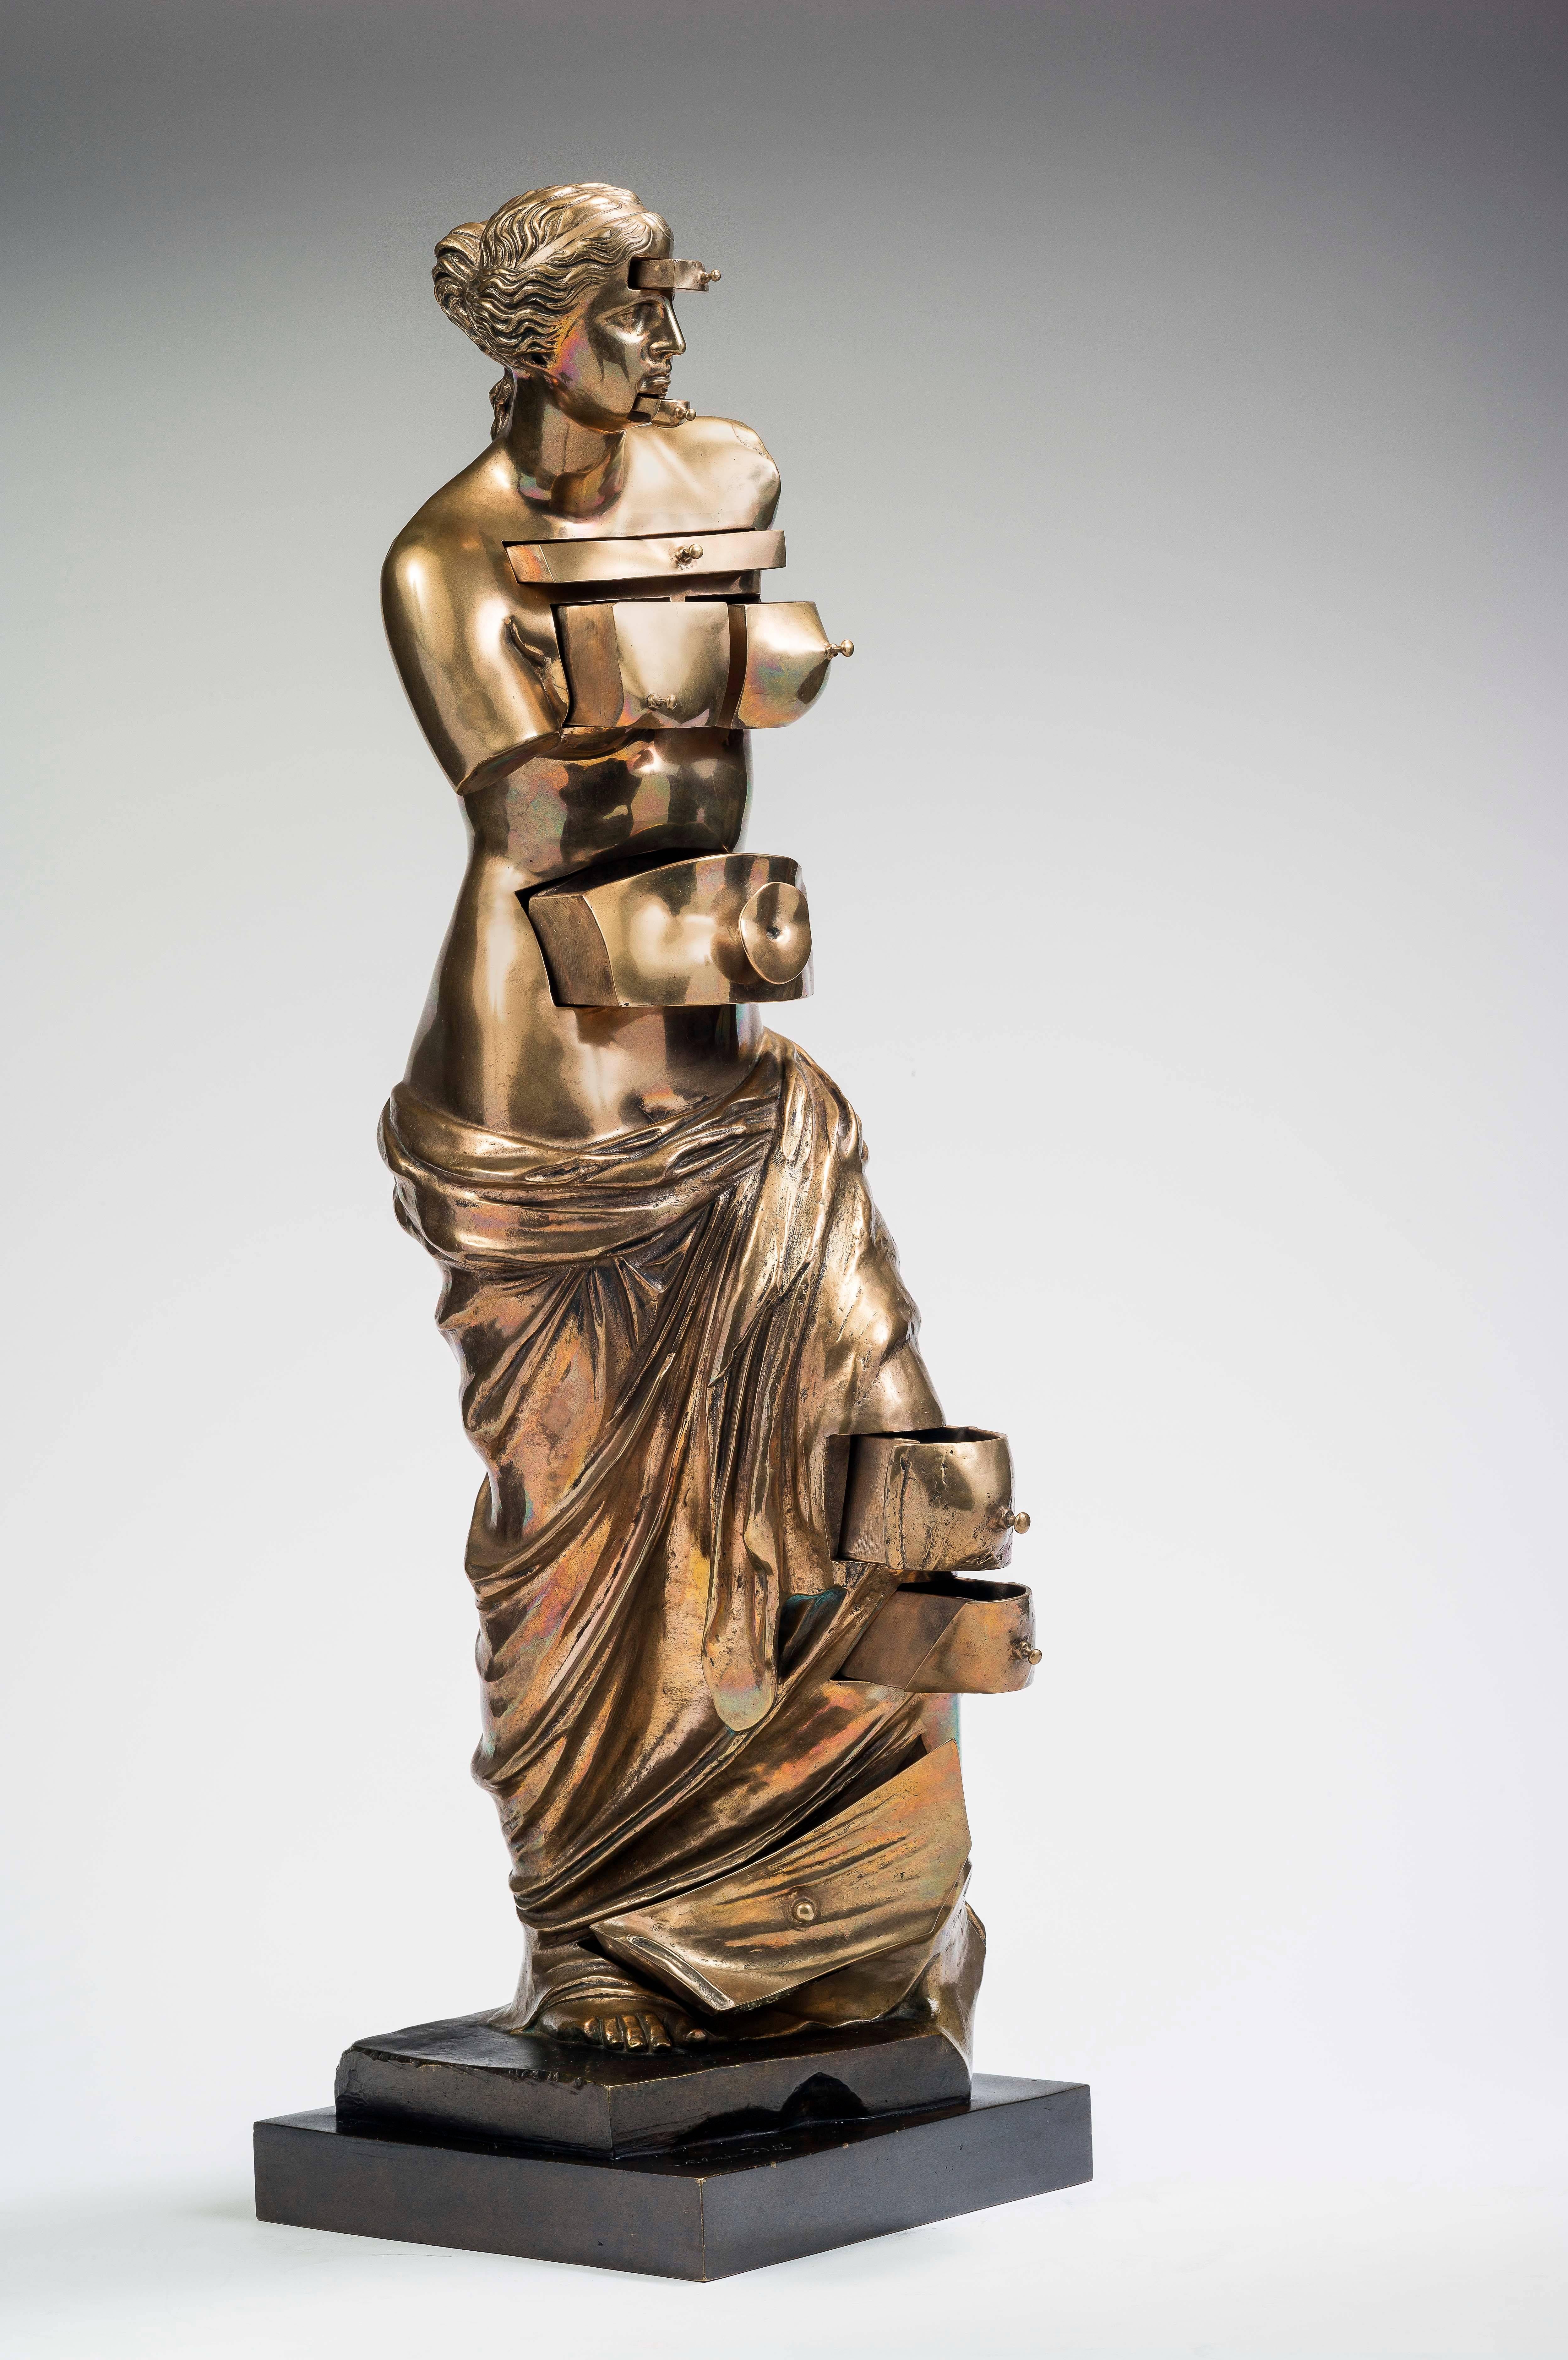 Venus aux Tiroirs - Sculpture by Salvador Dalí